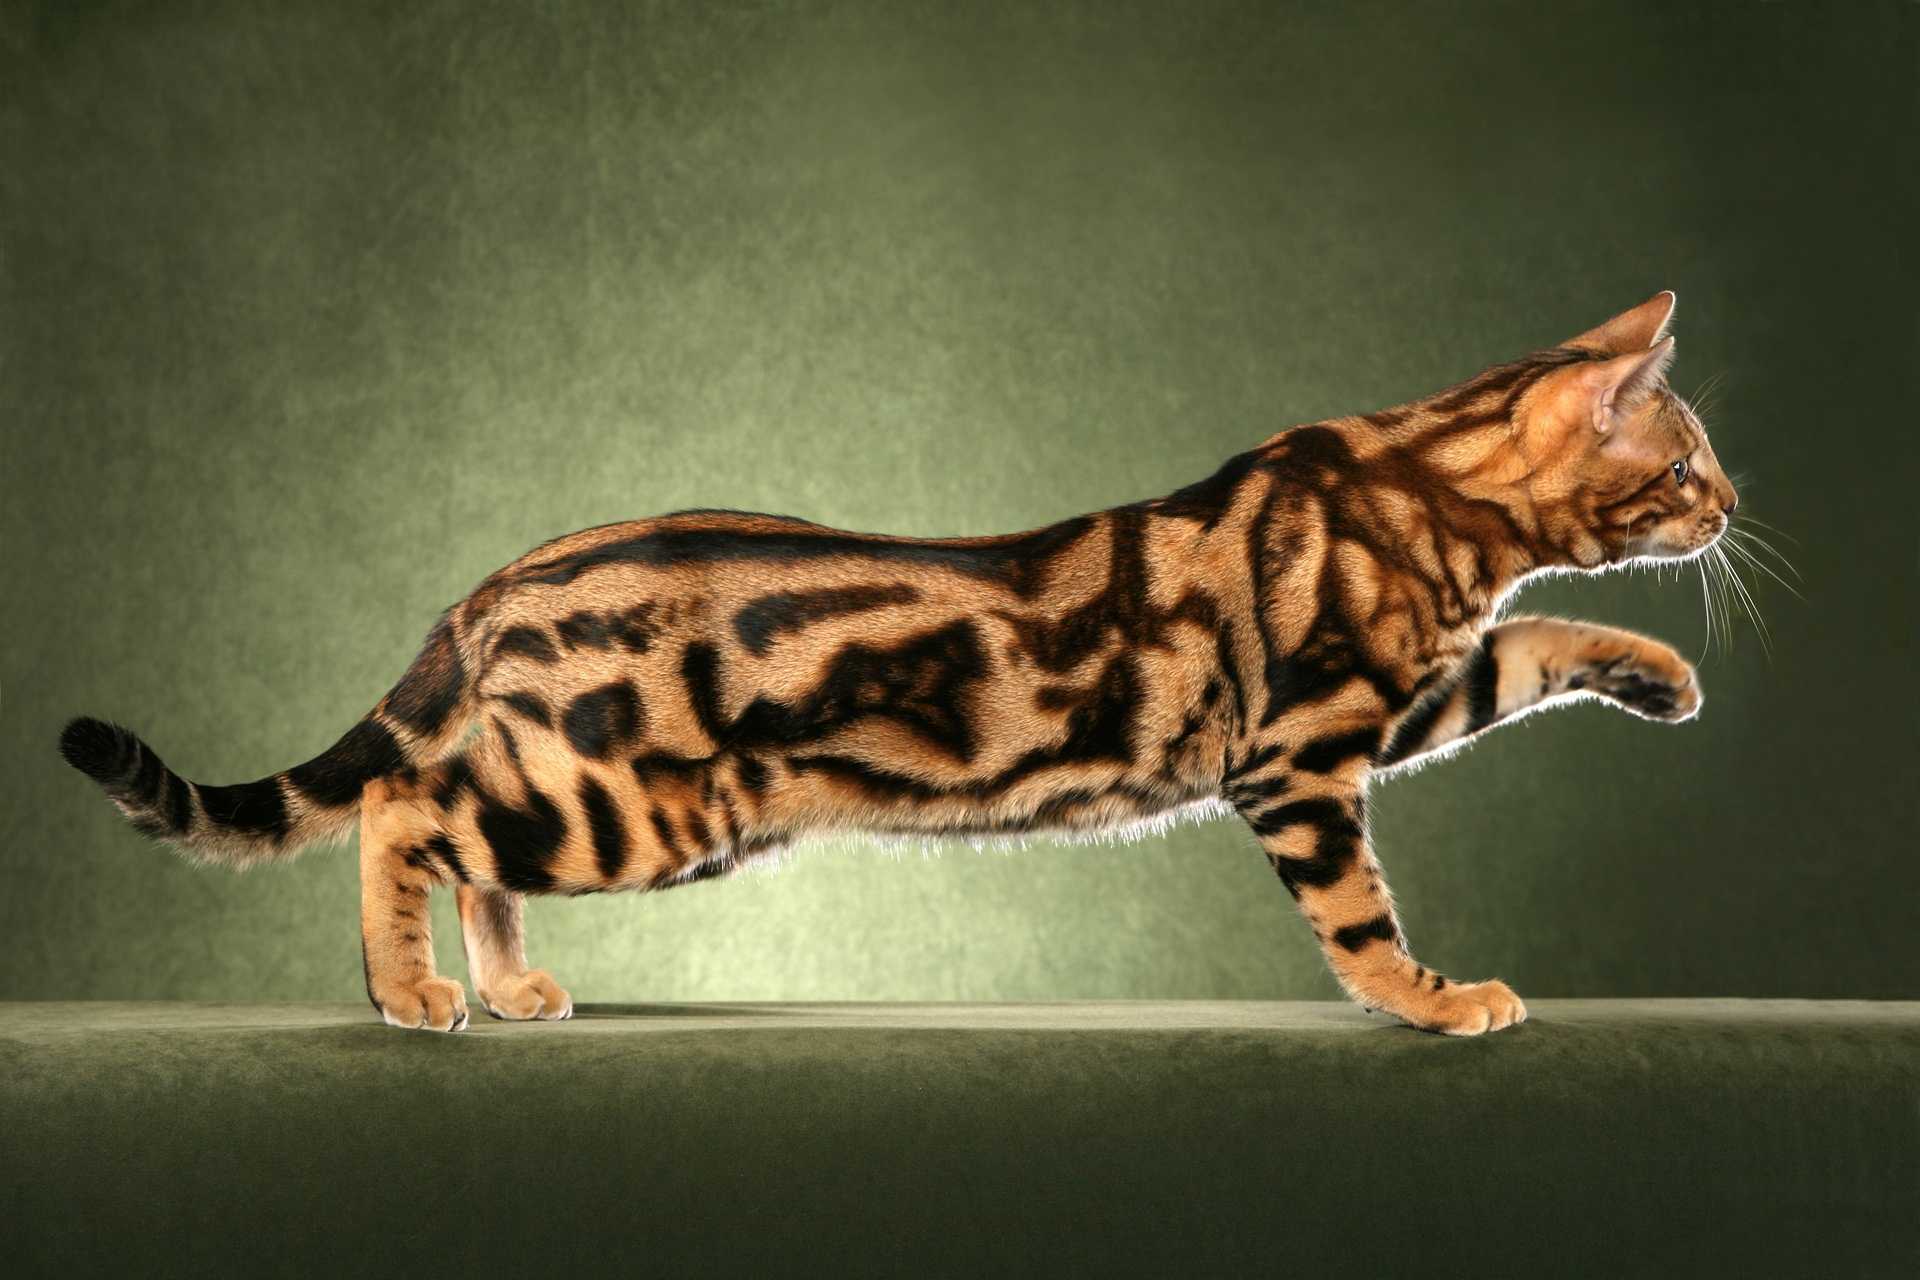 Рассмотрите фотографию кошки дикого окраса породы бенгальская. Бенгальская кошка Марбл. Бенгальская кошка Браун Марбл. Бенгал мраморный табби. Кошка породы бенгал мраморный.